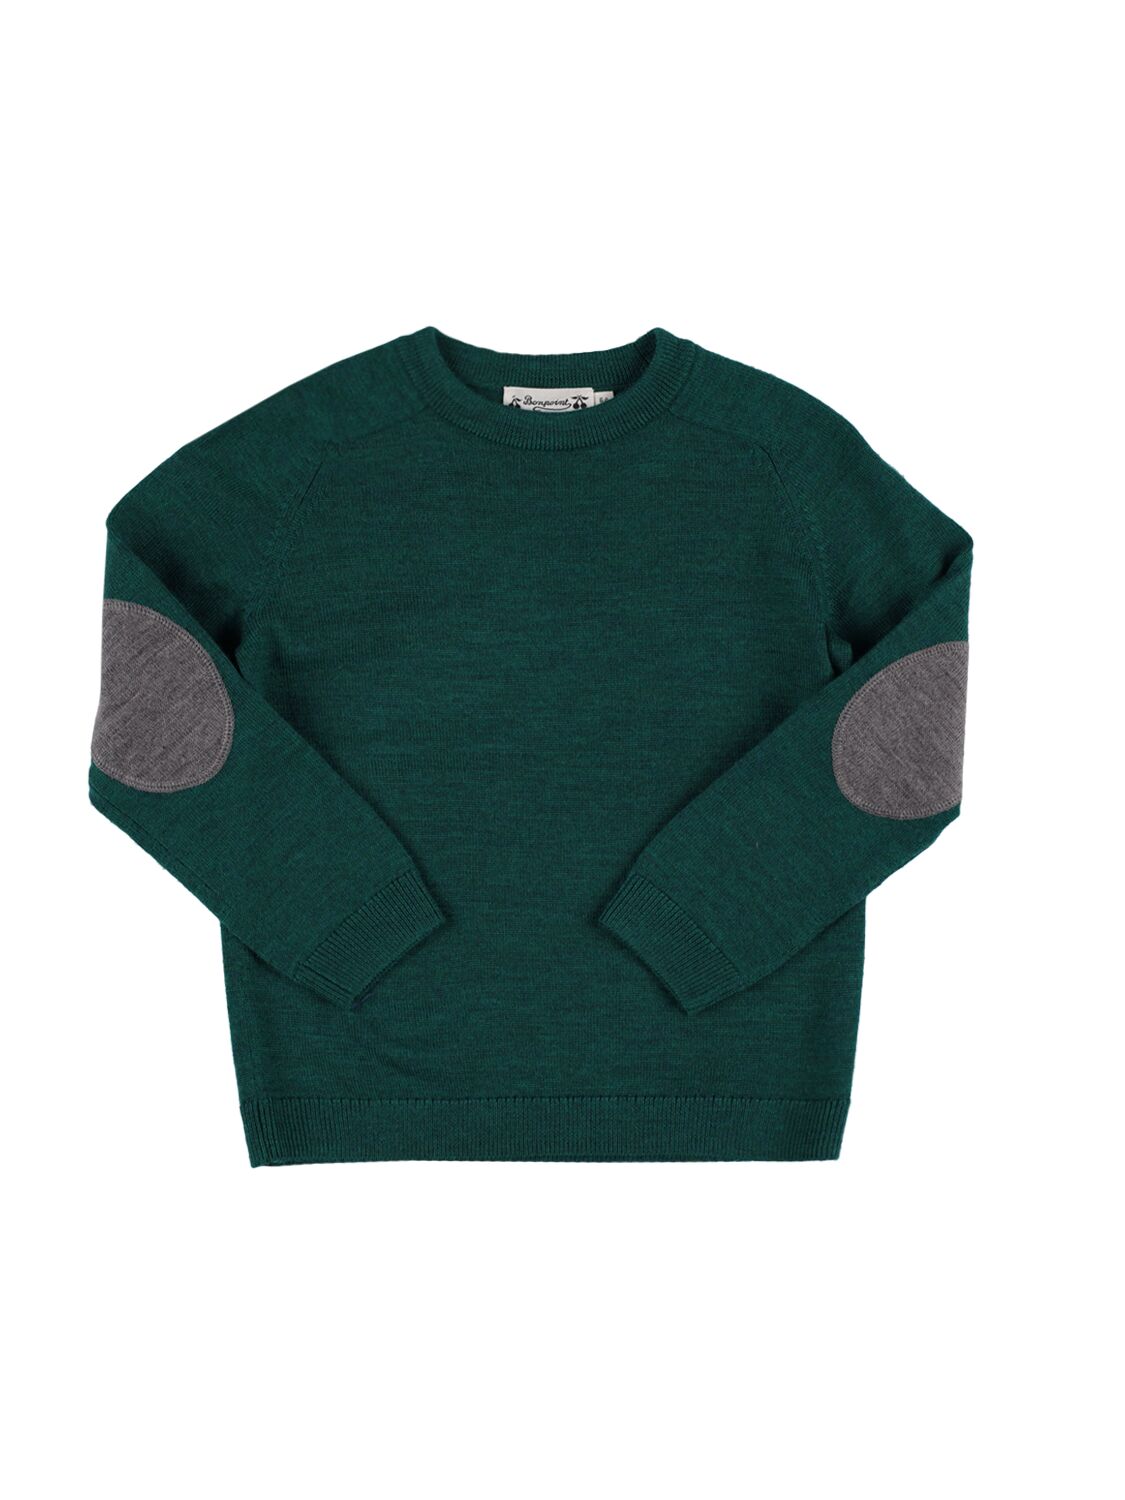 Bonpoint Kids' Bowen Wool Sweater In Green